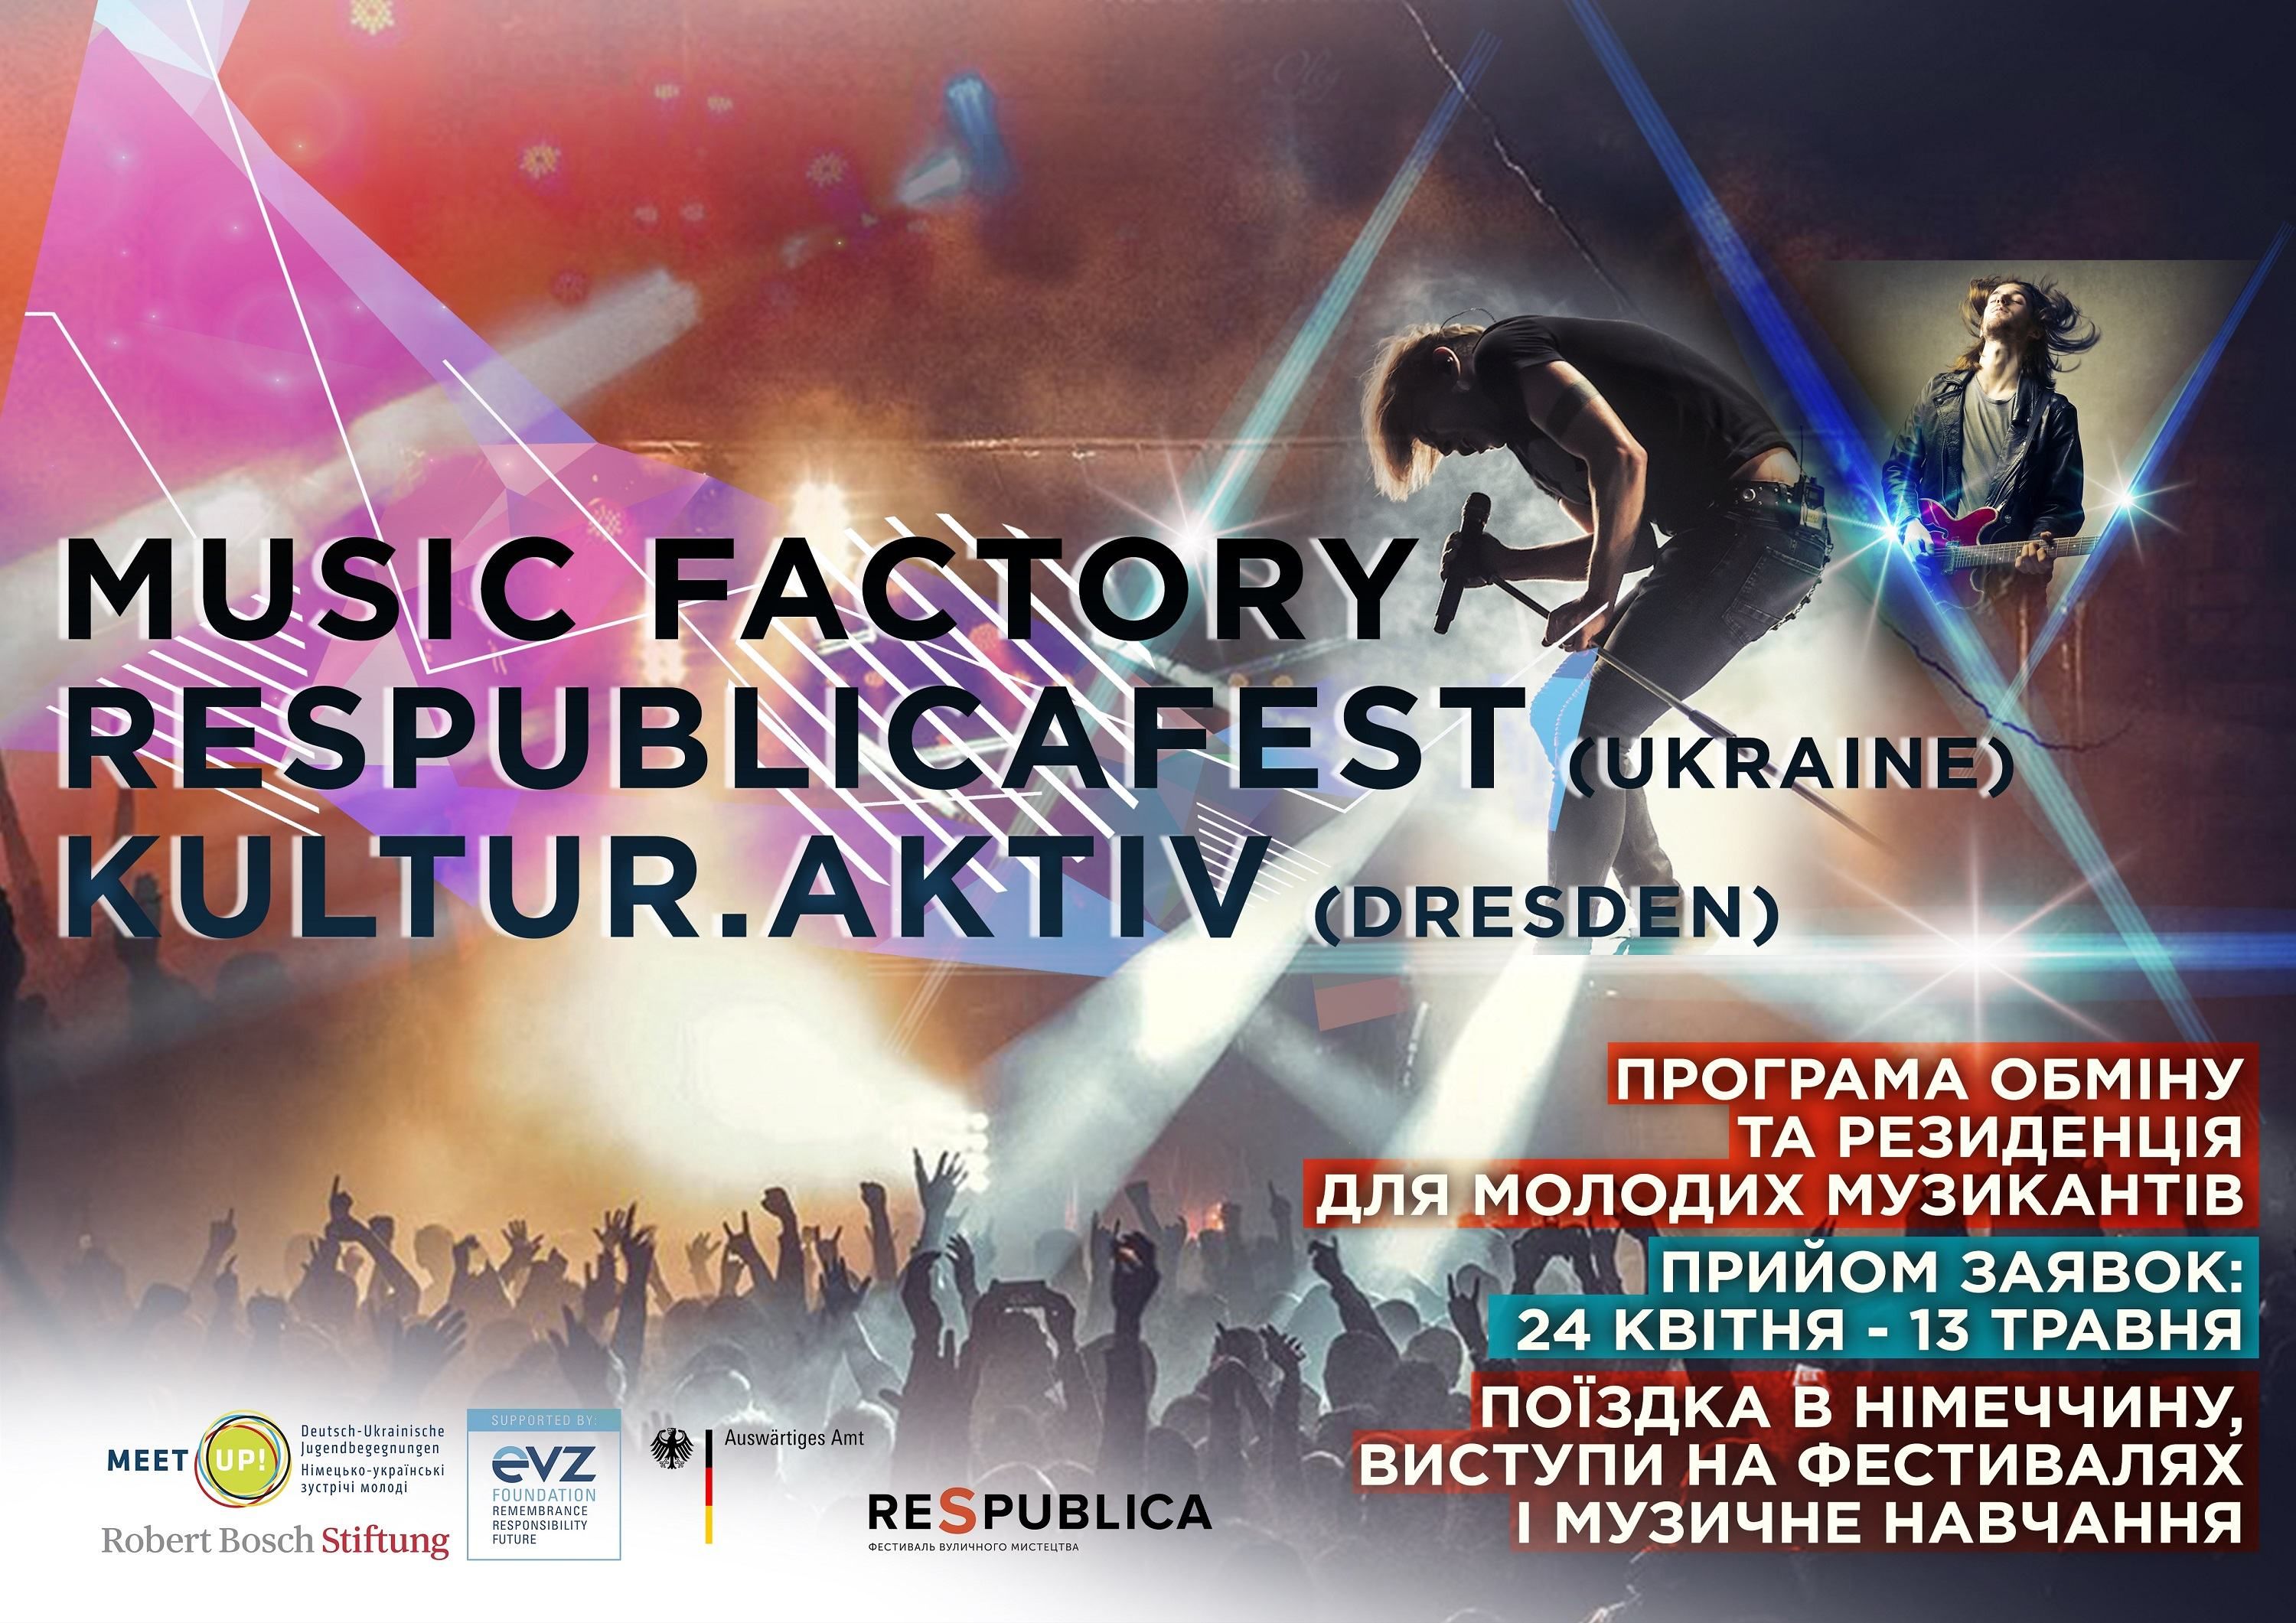 Шанс для украинских музыкантов: RespublicaFEST запускает международную программу обмена